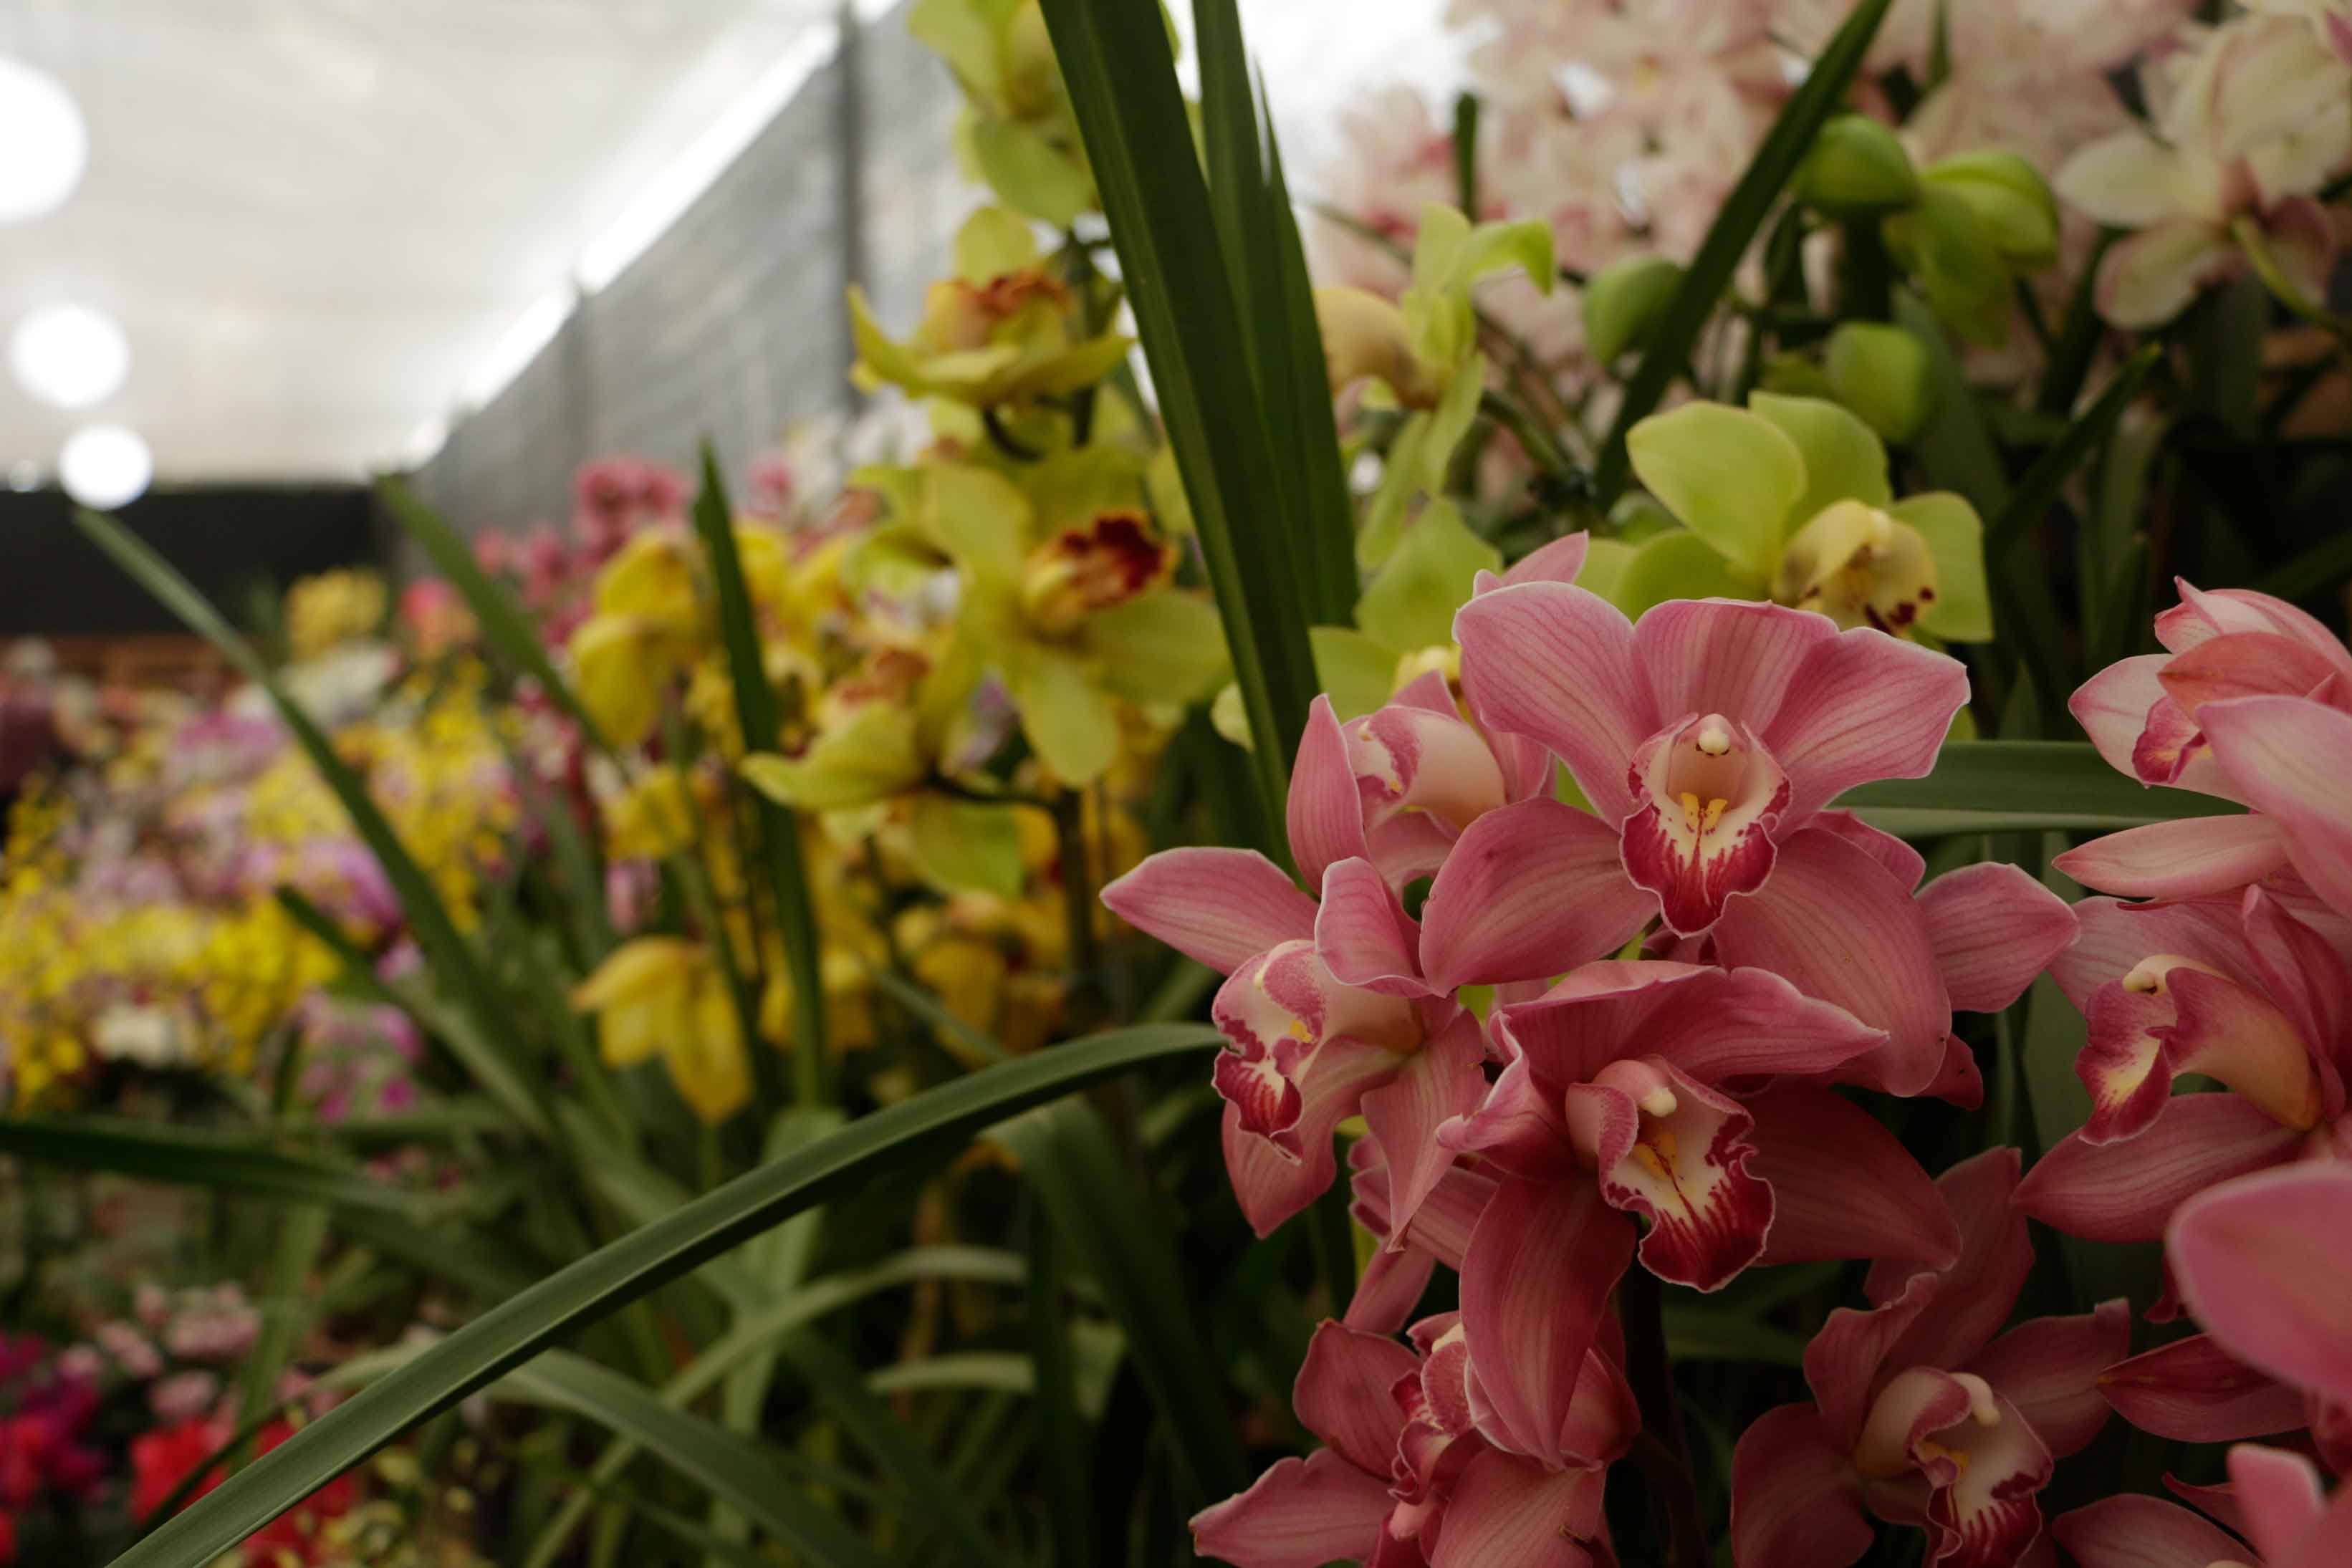 Orquídeas no Circuito das Frutas, beleza e variedade